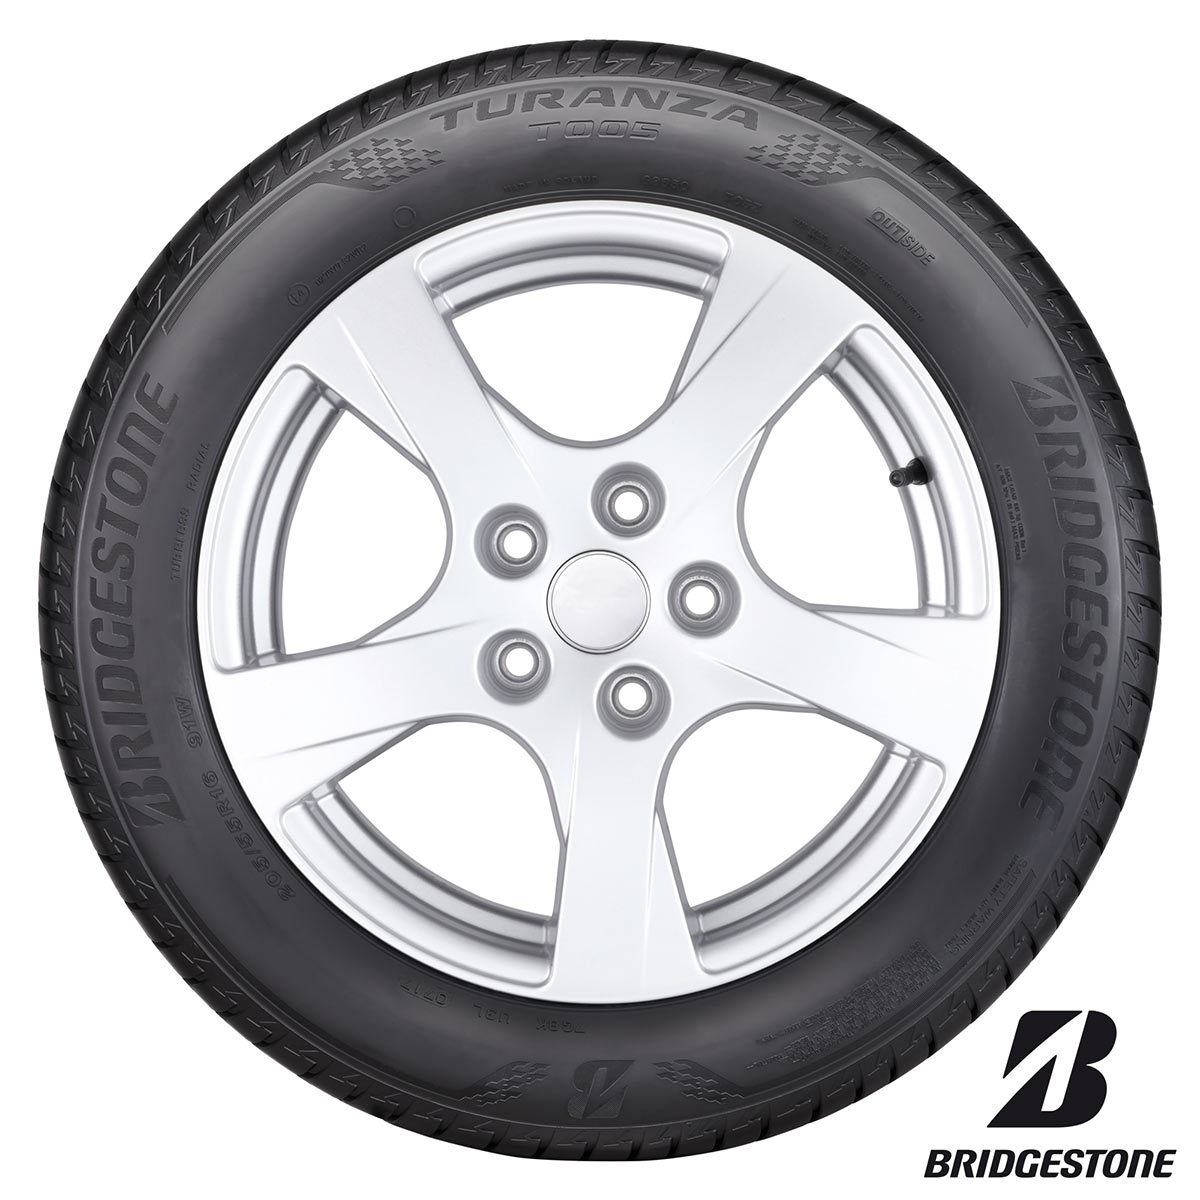 Bridgestone 185/65 R15 (92)T TURANZA T005 XL